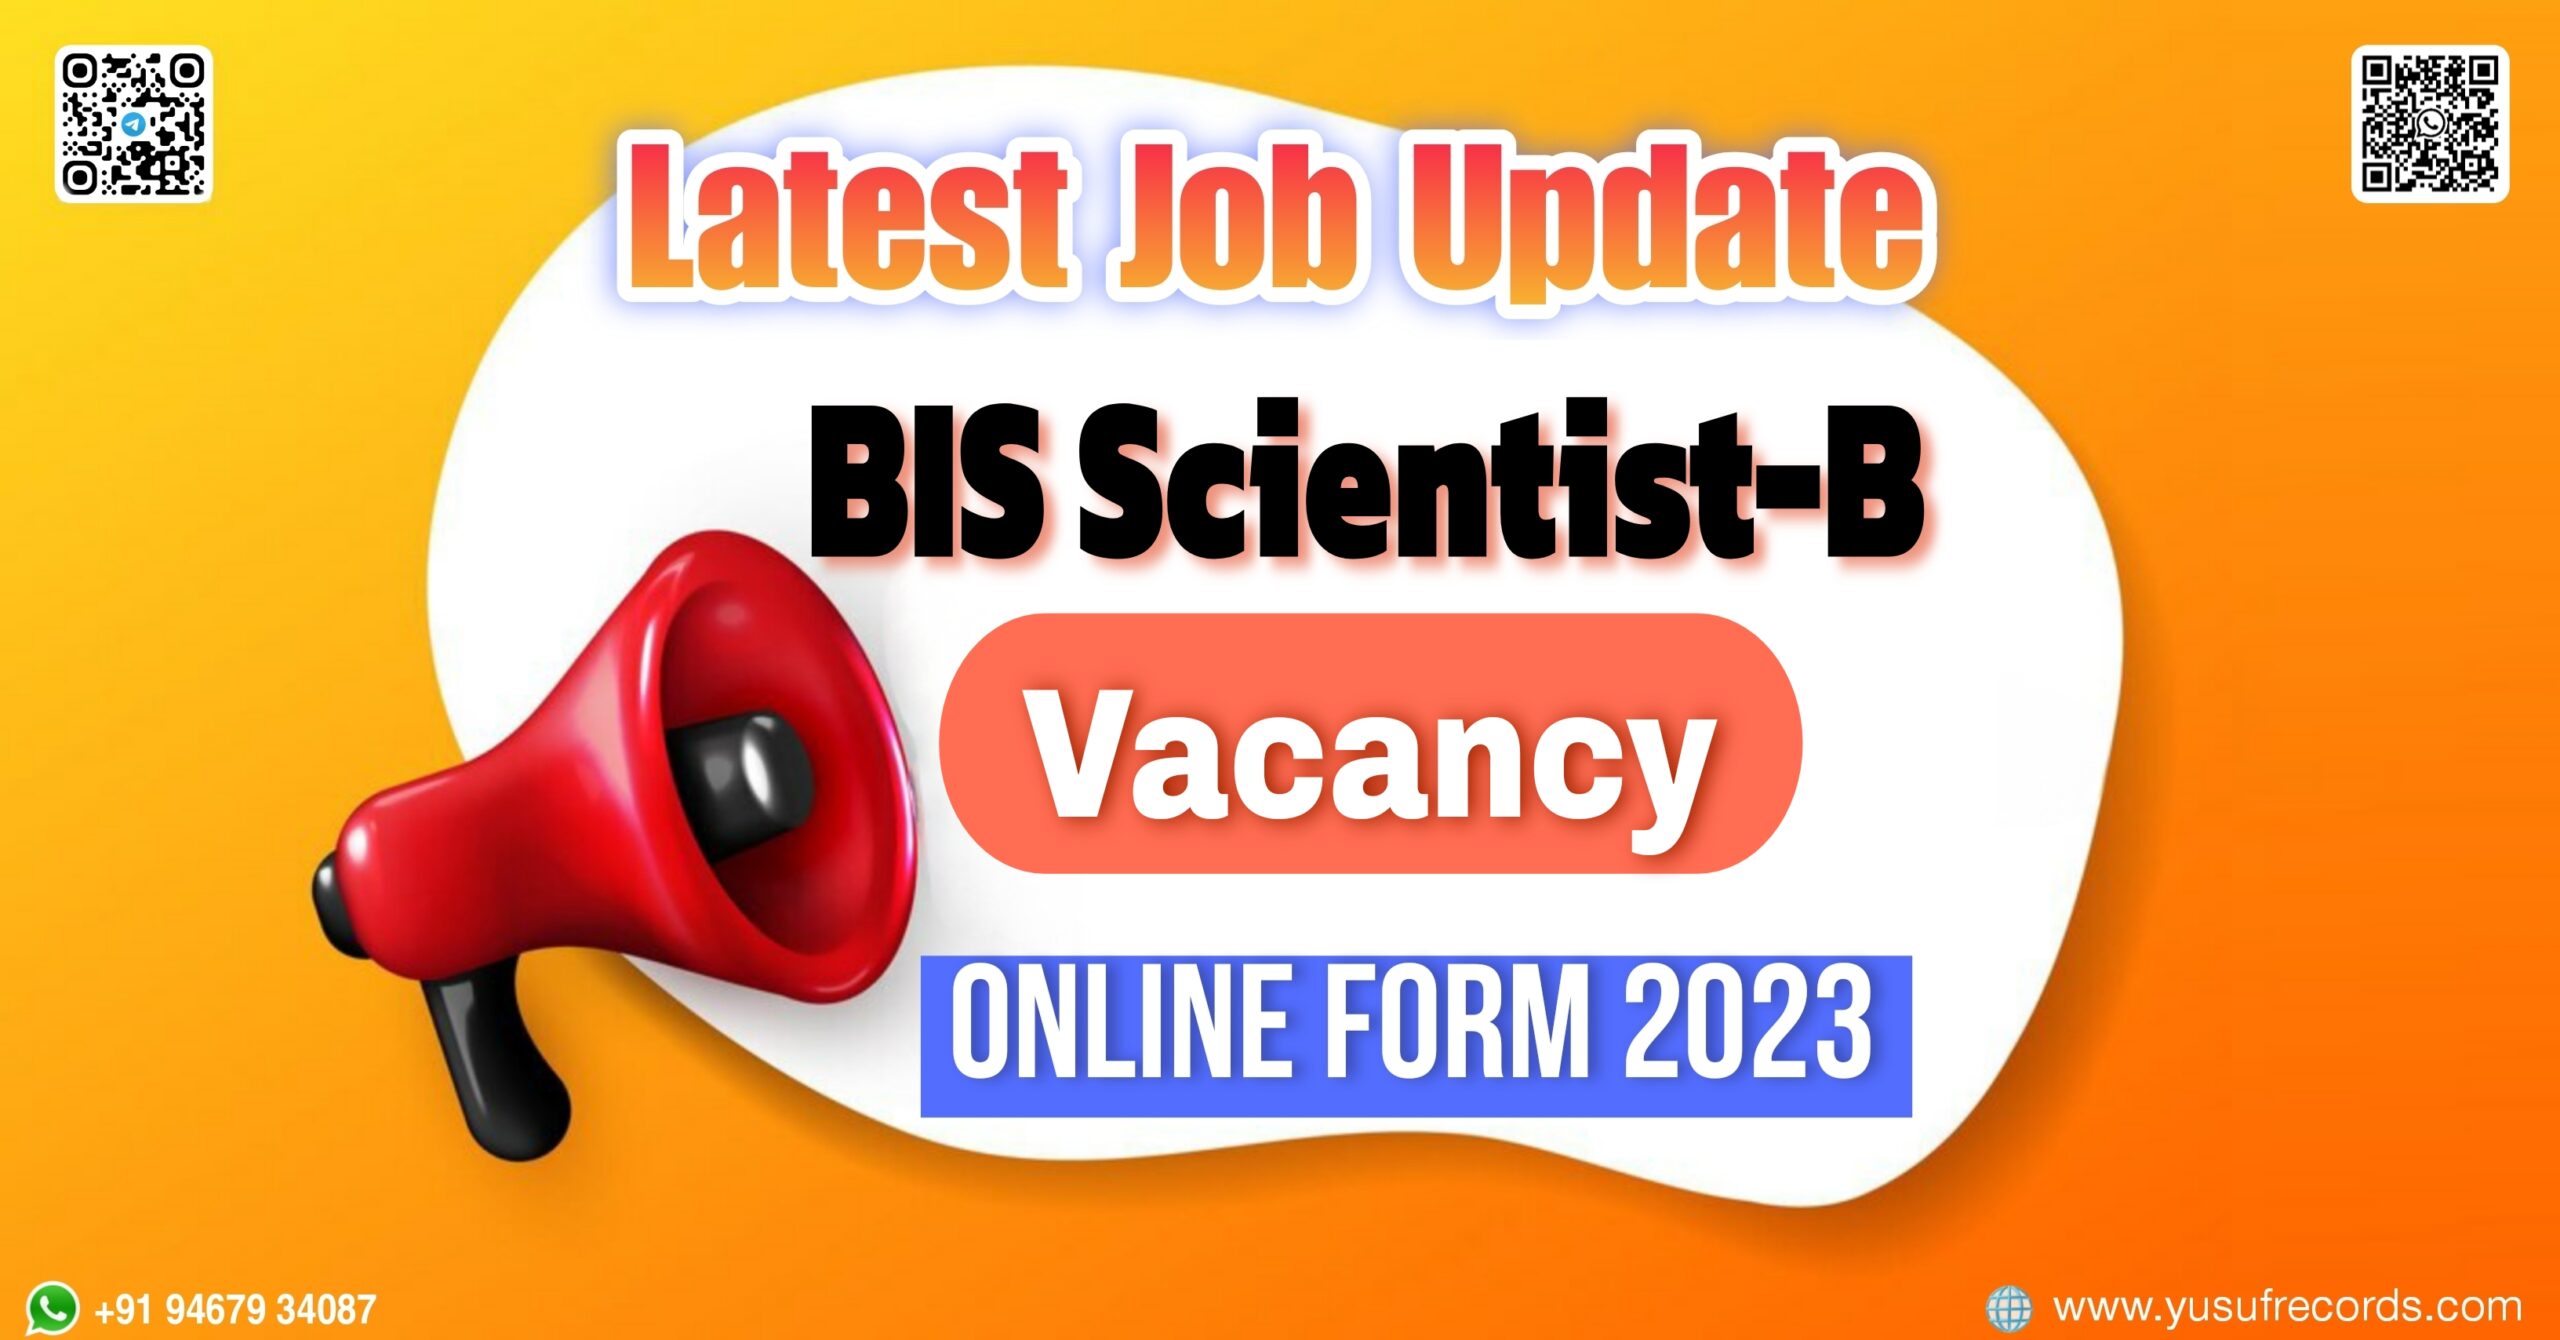 BIS Scientist-B Vacancy Online Form 2023 yusufrecords.com